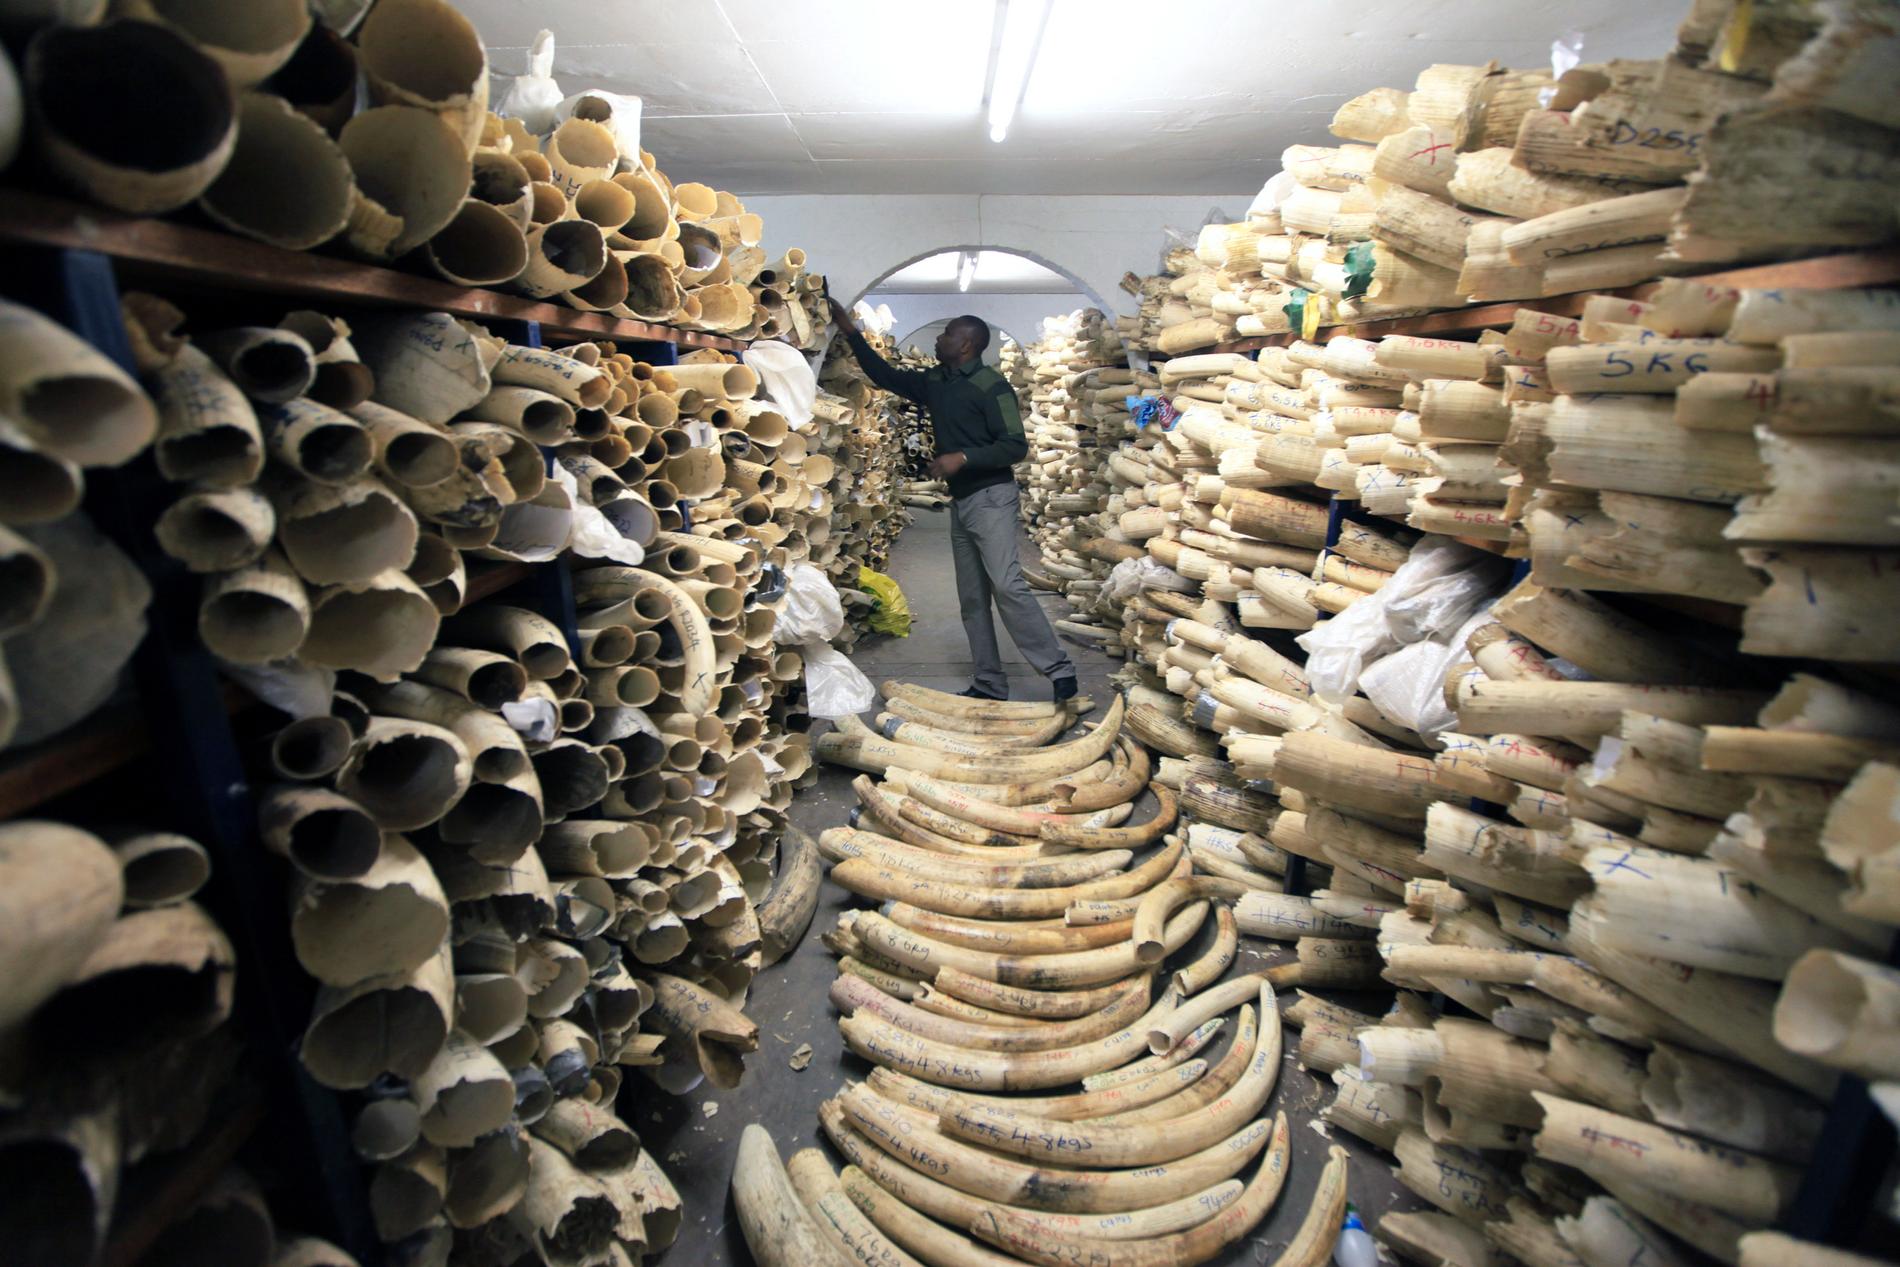 Svenska turister fortsätter att handla med illegala varor som exempelvis elfenben, visar en ny kartläggning av Kantar Sifo gjord på uppdrag av Världsnaturfonden (WWF). Arkivbild.